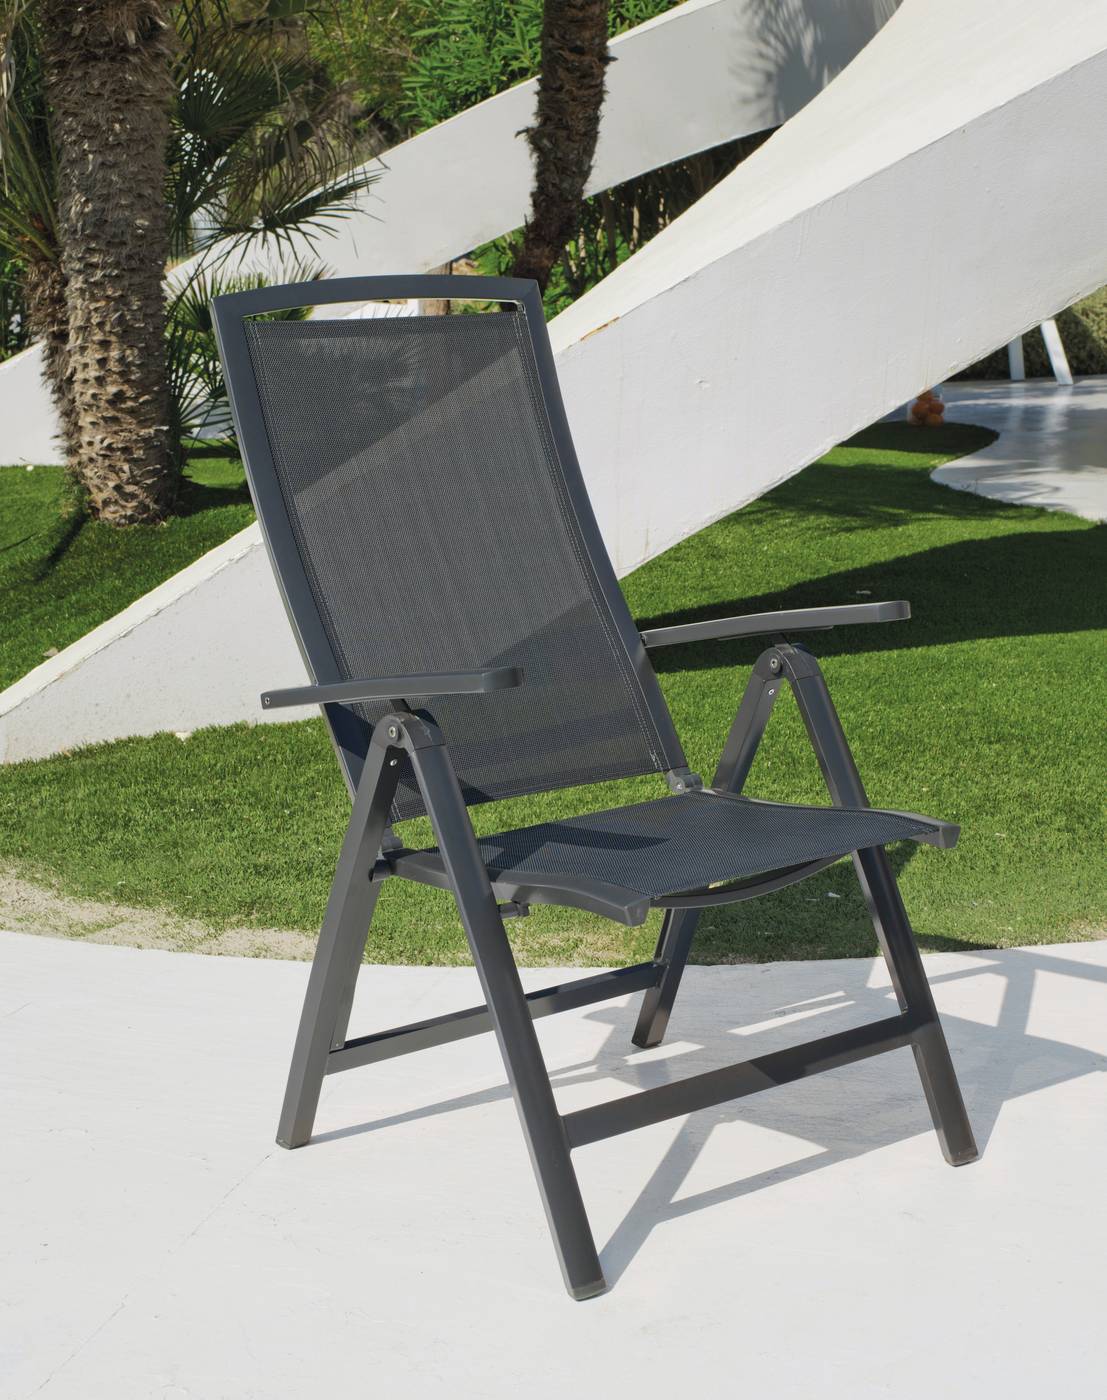 Tumbona relax 5 posiciones de aluminio color antracita con respaldo y asiento de textilen.